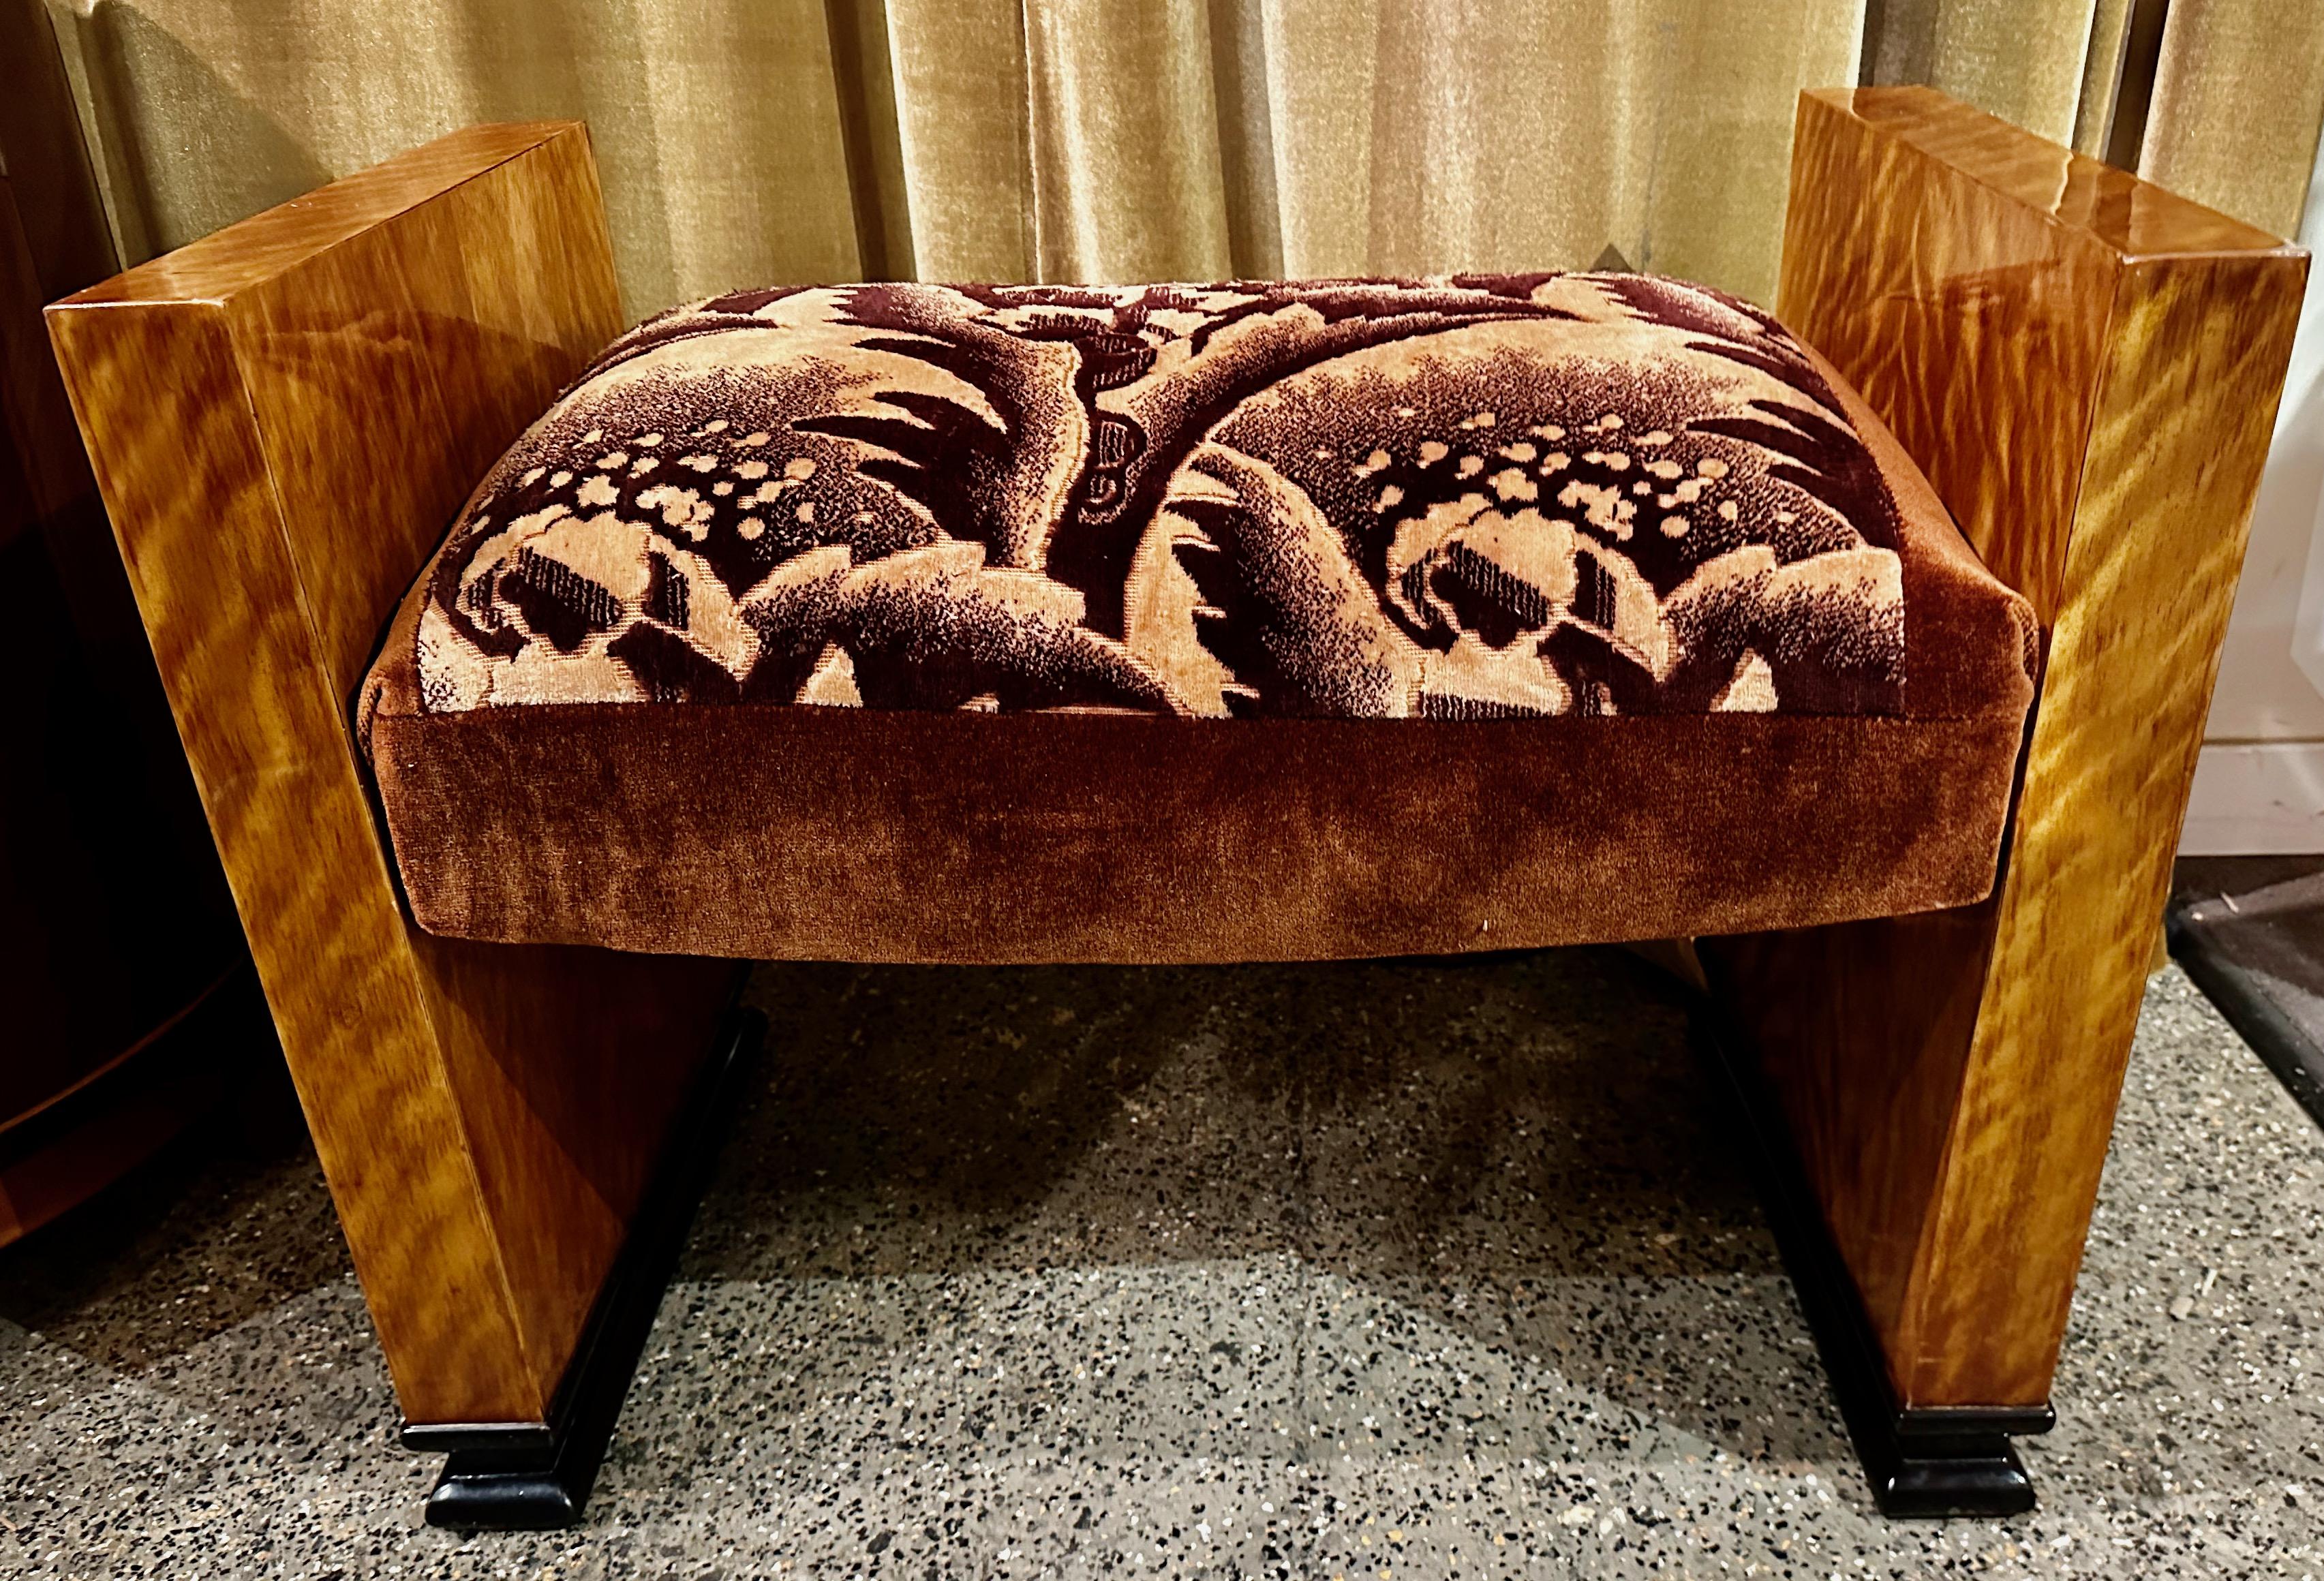 Art Deco European Wooden Petite Bench Original Fabric. Banc unique en bois massif avec un tissu original supplémentaire encadré en utilisant du mohair marron vintage. Ce petit banc est généralement utilisé pour les petites places assises, souvent à